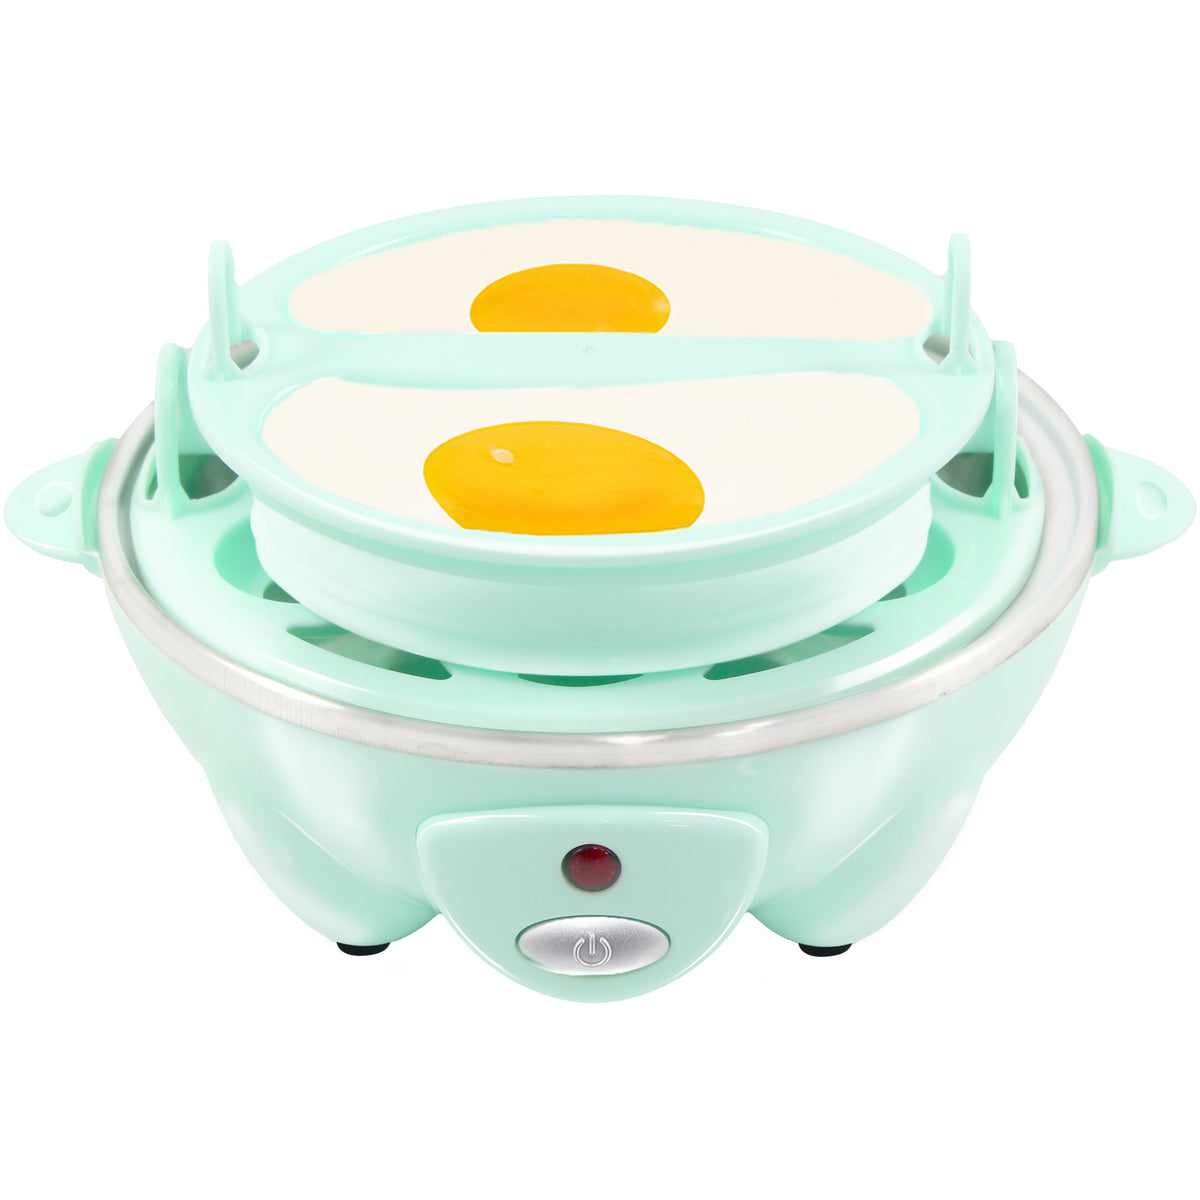 Elite Gourmet EGC-007 Rapid Egg Cooker, 7 Easy-To-Peel, Hard, Medium, Soft  Boiled Eggs, Poacher, Omelet Maker, Auto Shut-Off, Alarm, 16-Recipe